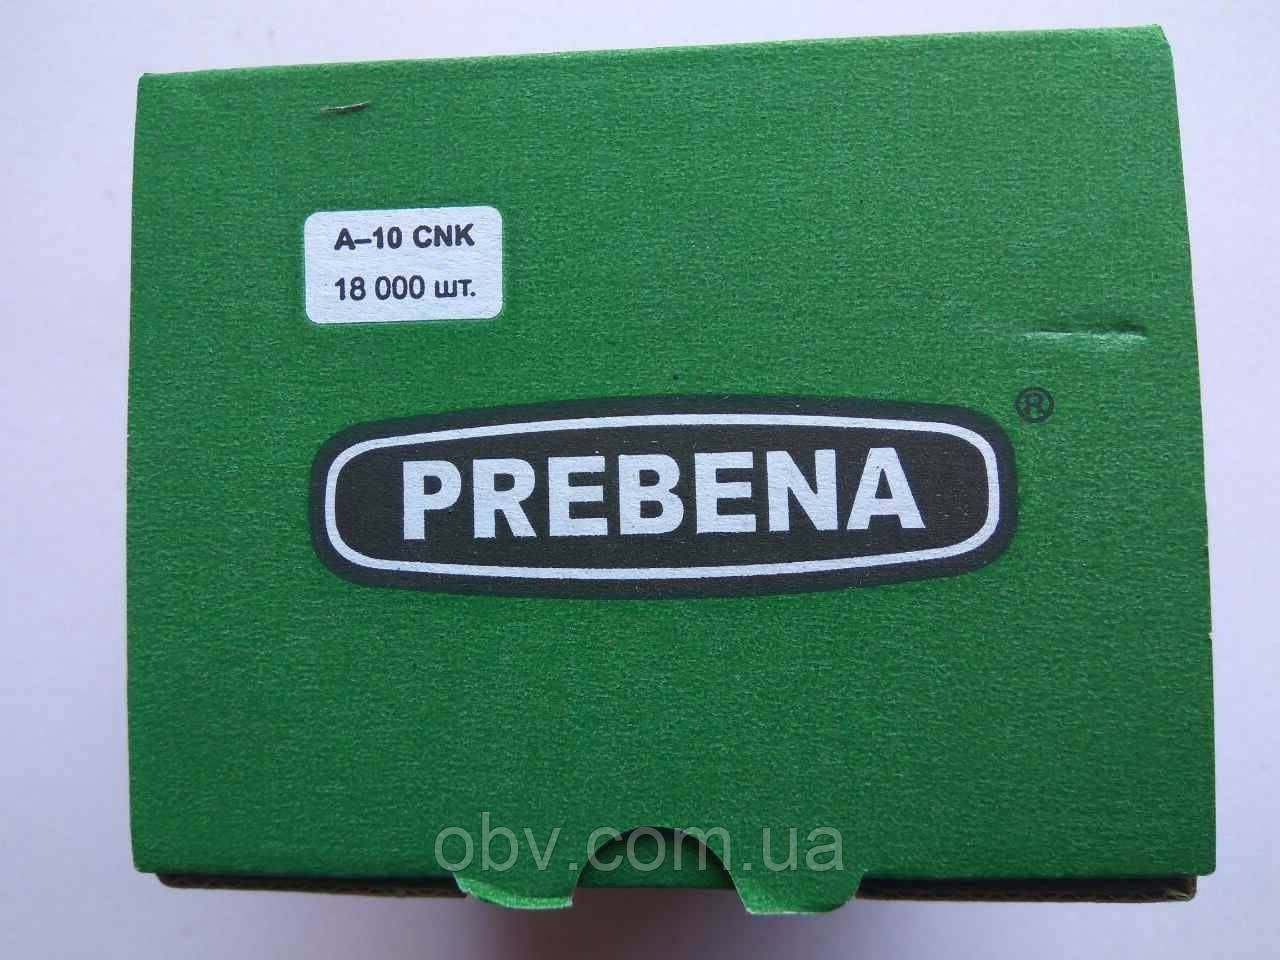 Скоба "PREBENA" 380/10 (18000 шт/уп.)